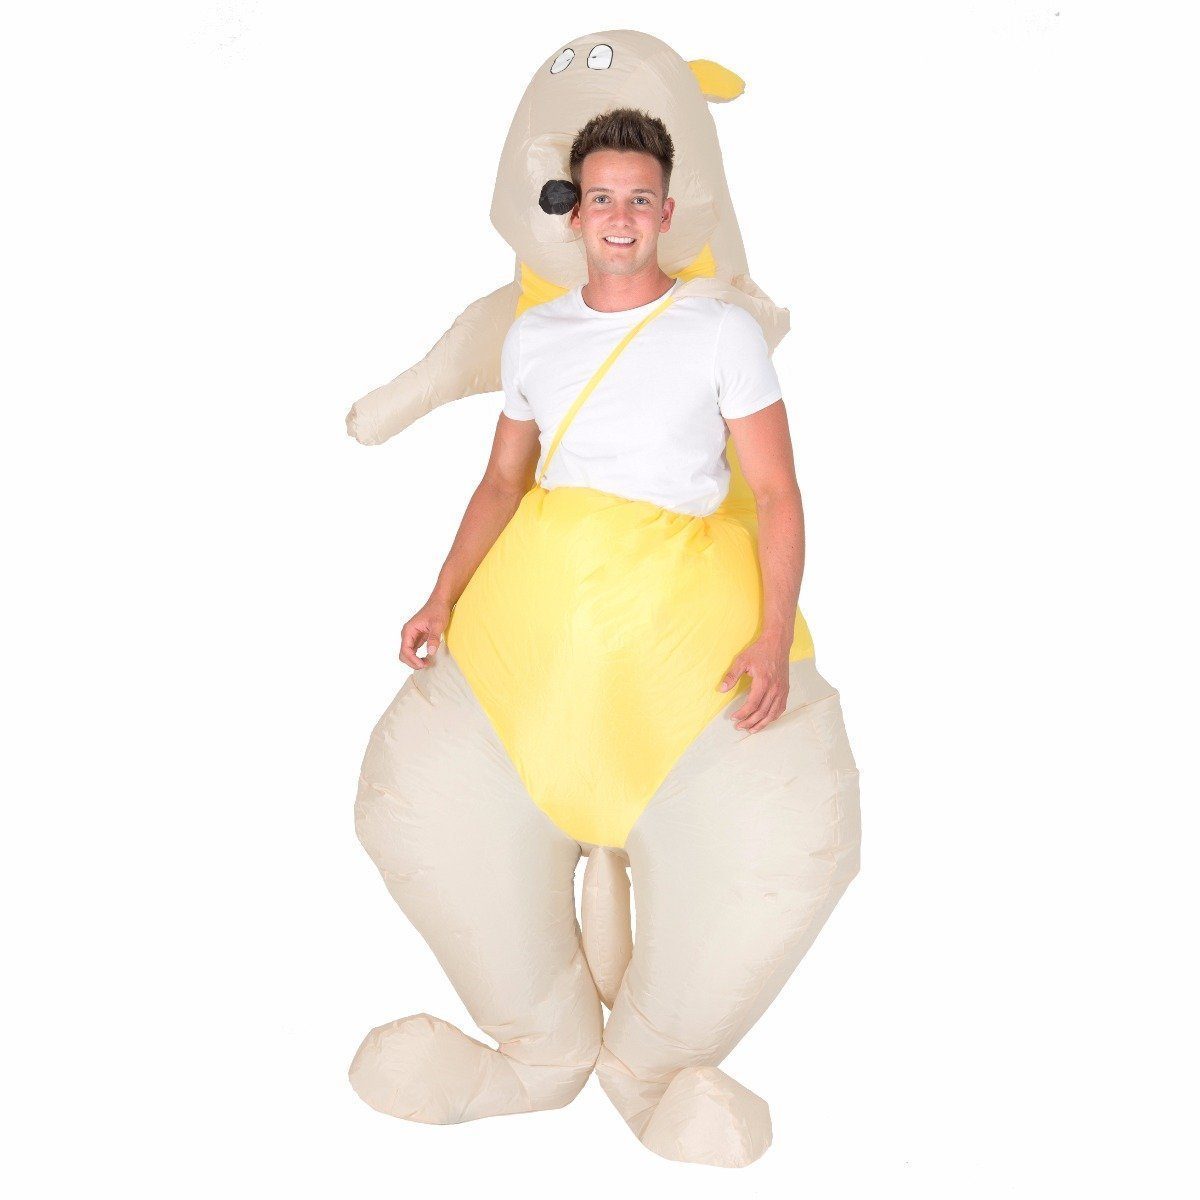 Fancy Dress - Inflatable Kangaroo Costume